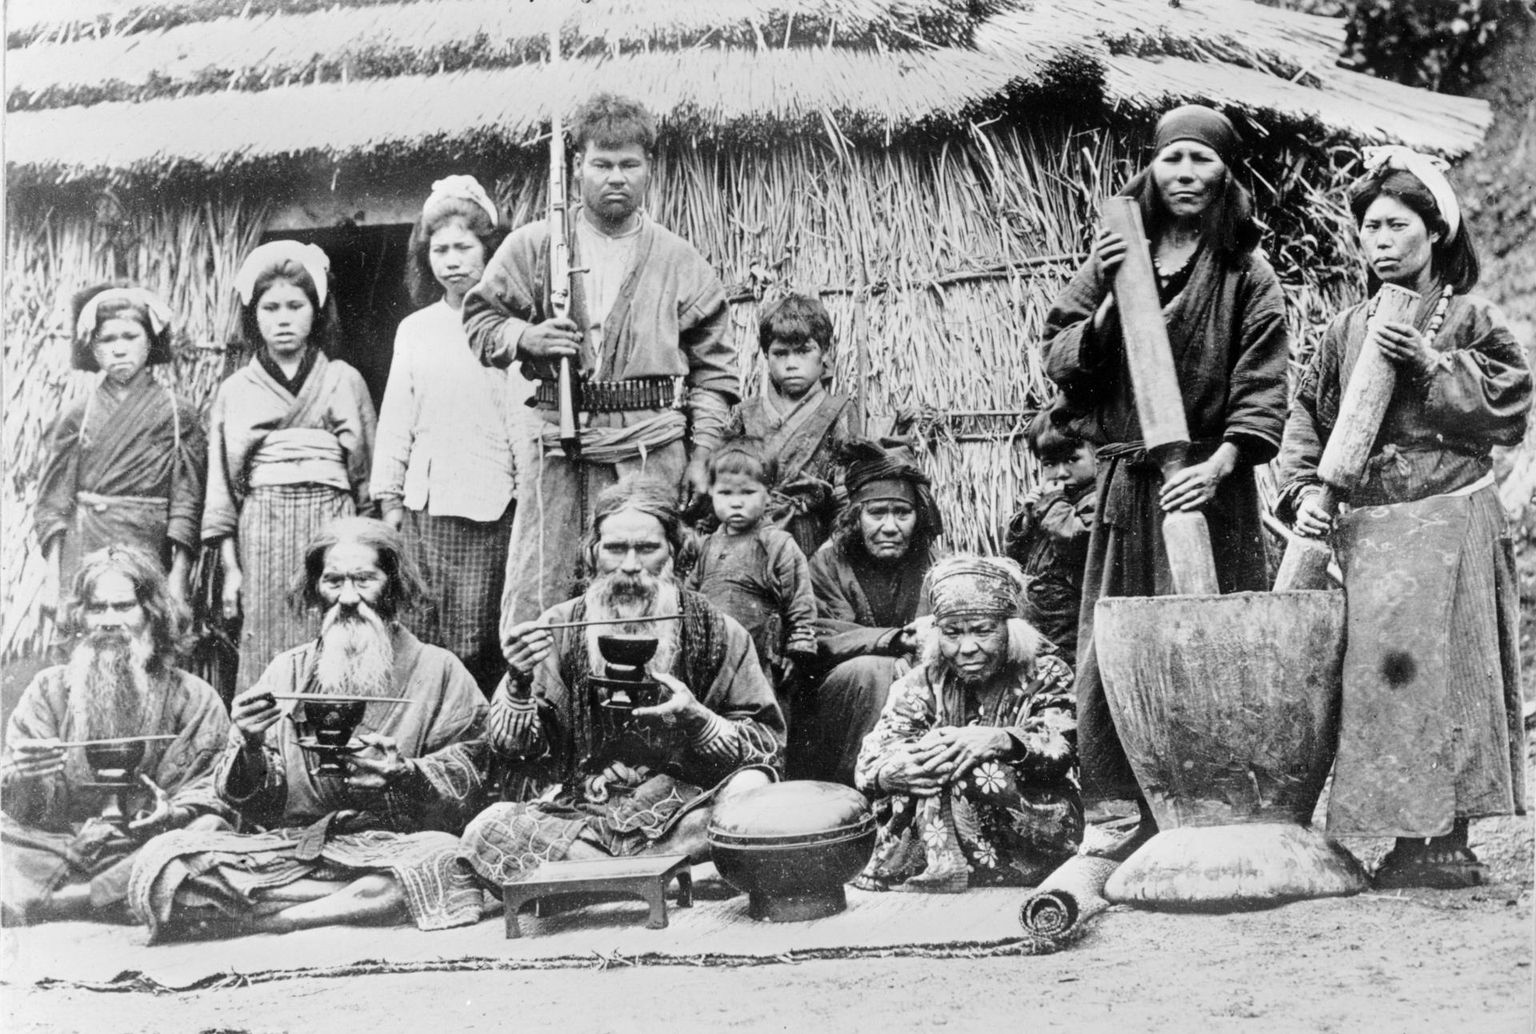 Kuriili saarte põlisasukateks olid ainud, Jaapani rahvusvähemus, kes erinevad jaapanlastest nii keeleliselt, kultuuriliselt kui geneetiliselt. Võib öelda, et Kuriili saarte üle kemplemine on kõige rängemat mõju avaldanud just ainudele, kes pärast Teist maailmasõda oma kodusaartelt Jaapanile kuuluvale Hokkaidō saarele saadeti.